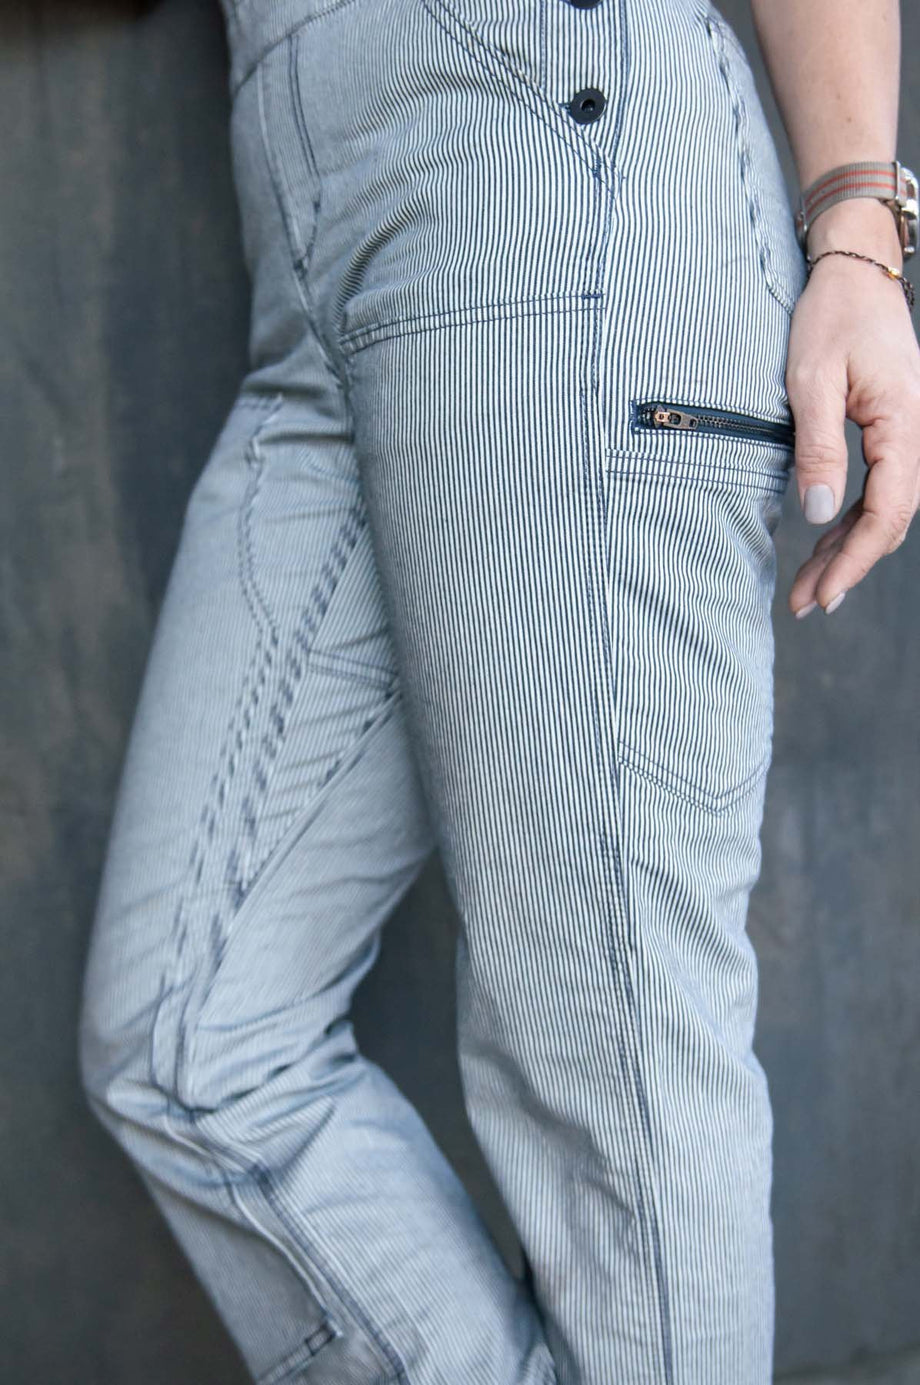 Freshly Overalls For Women - Indigo Stripe Denim